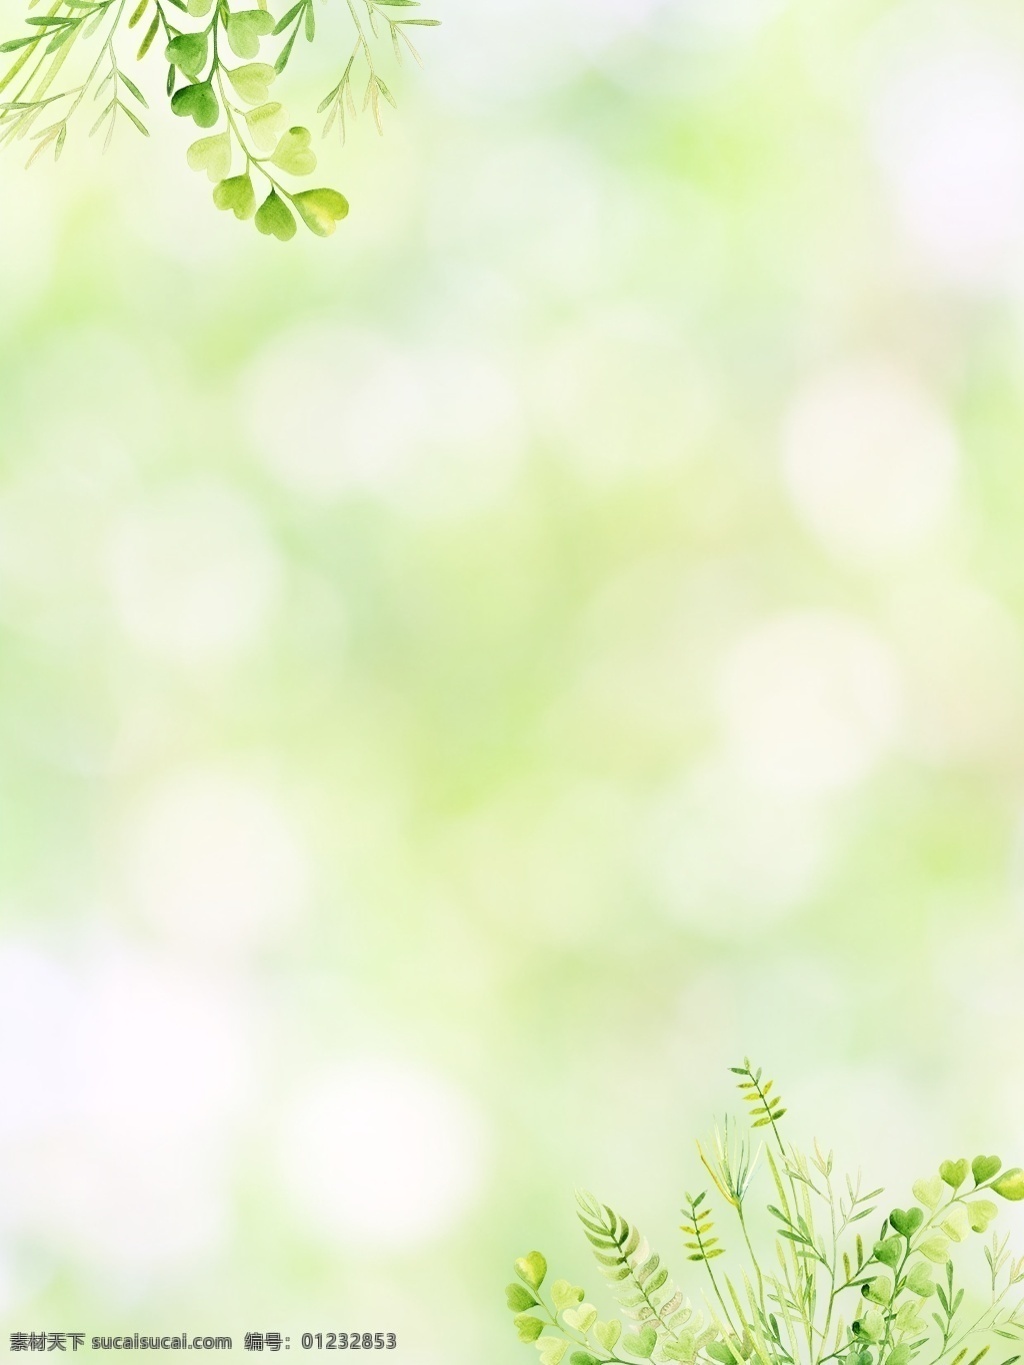 小 清新 绿色 绿叶 背景 海报 叶子 唯美 女装 广告 小清新 夏季 植物 简约 淘宝 闪光